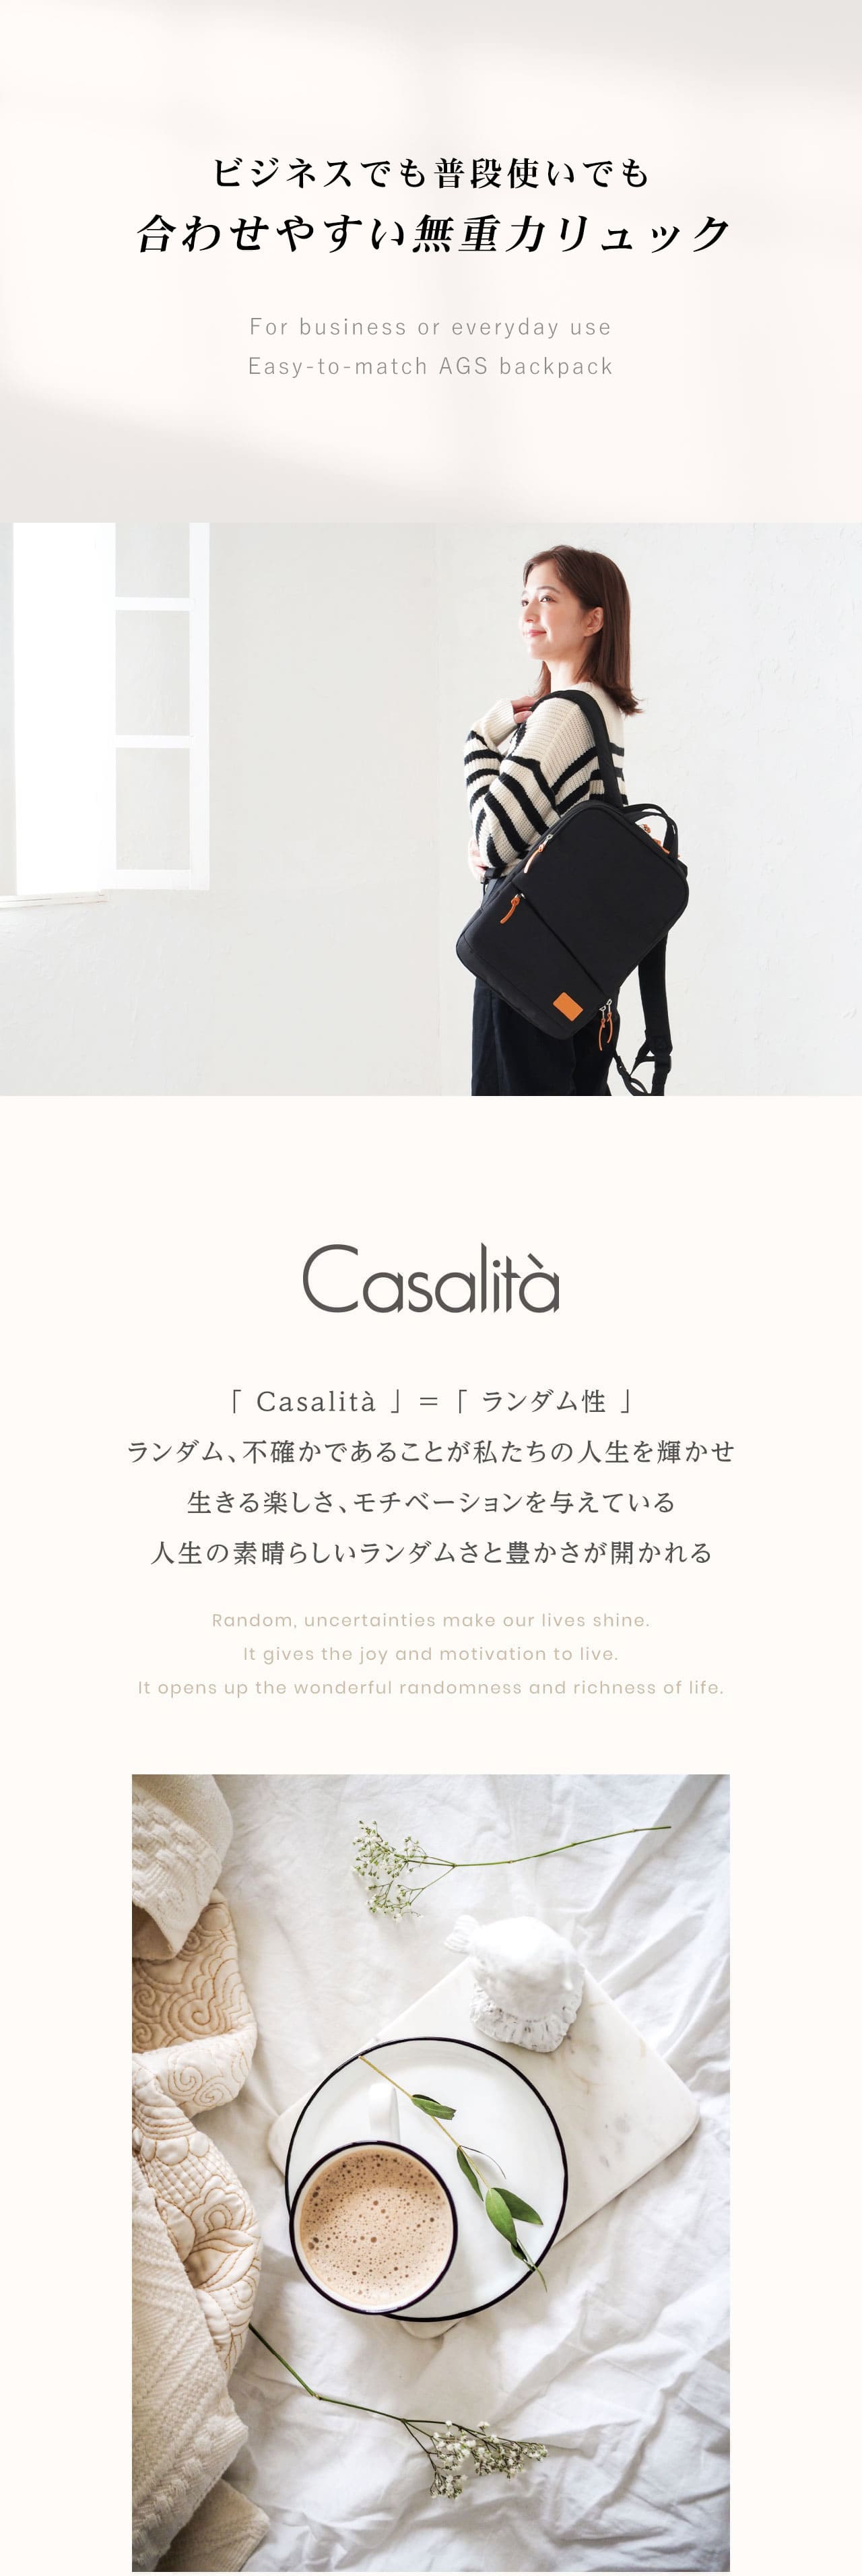 CasalitaバックパックAGSリュックA413.3インチキャサリータCL-4996を持った女性モデル・Casalitaについて